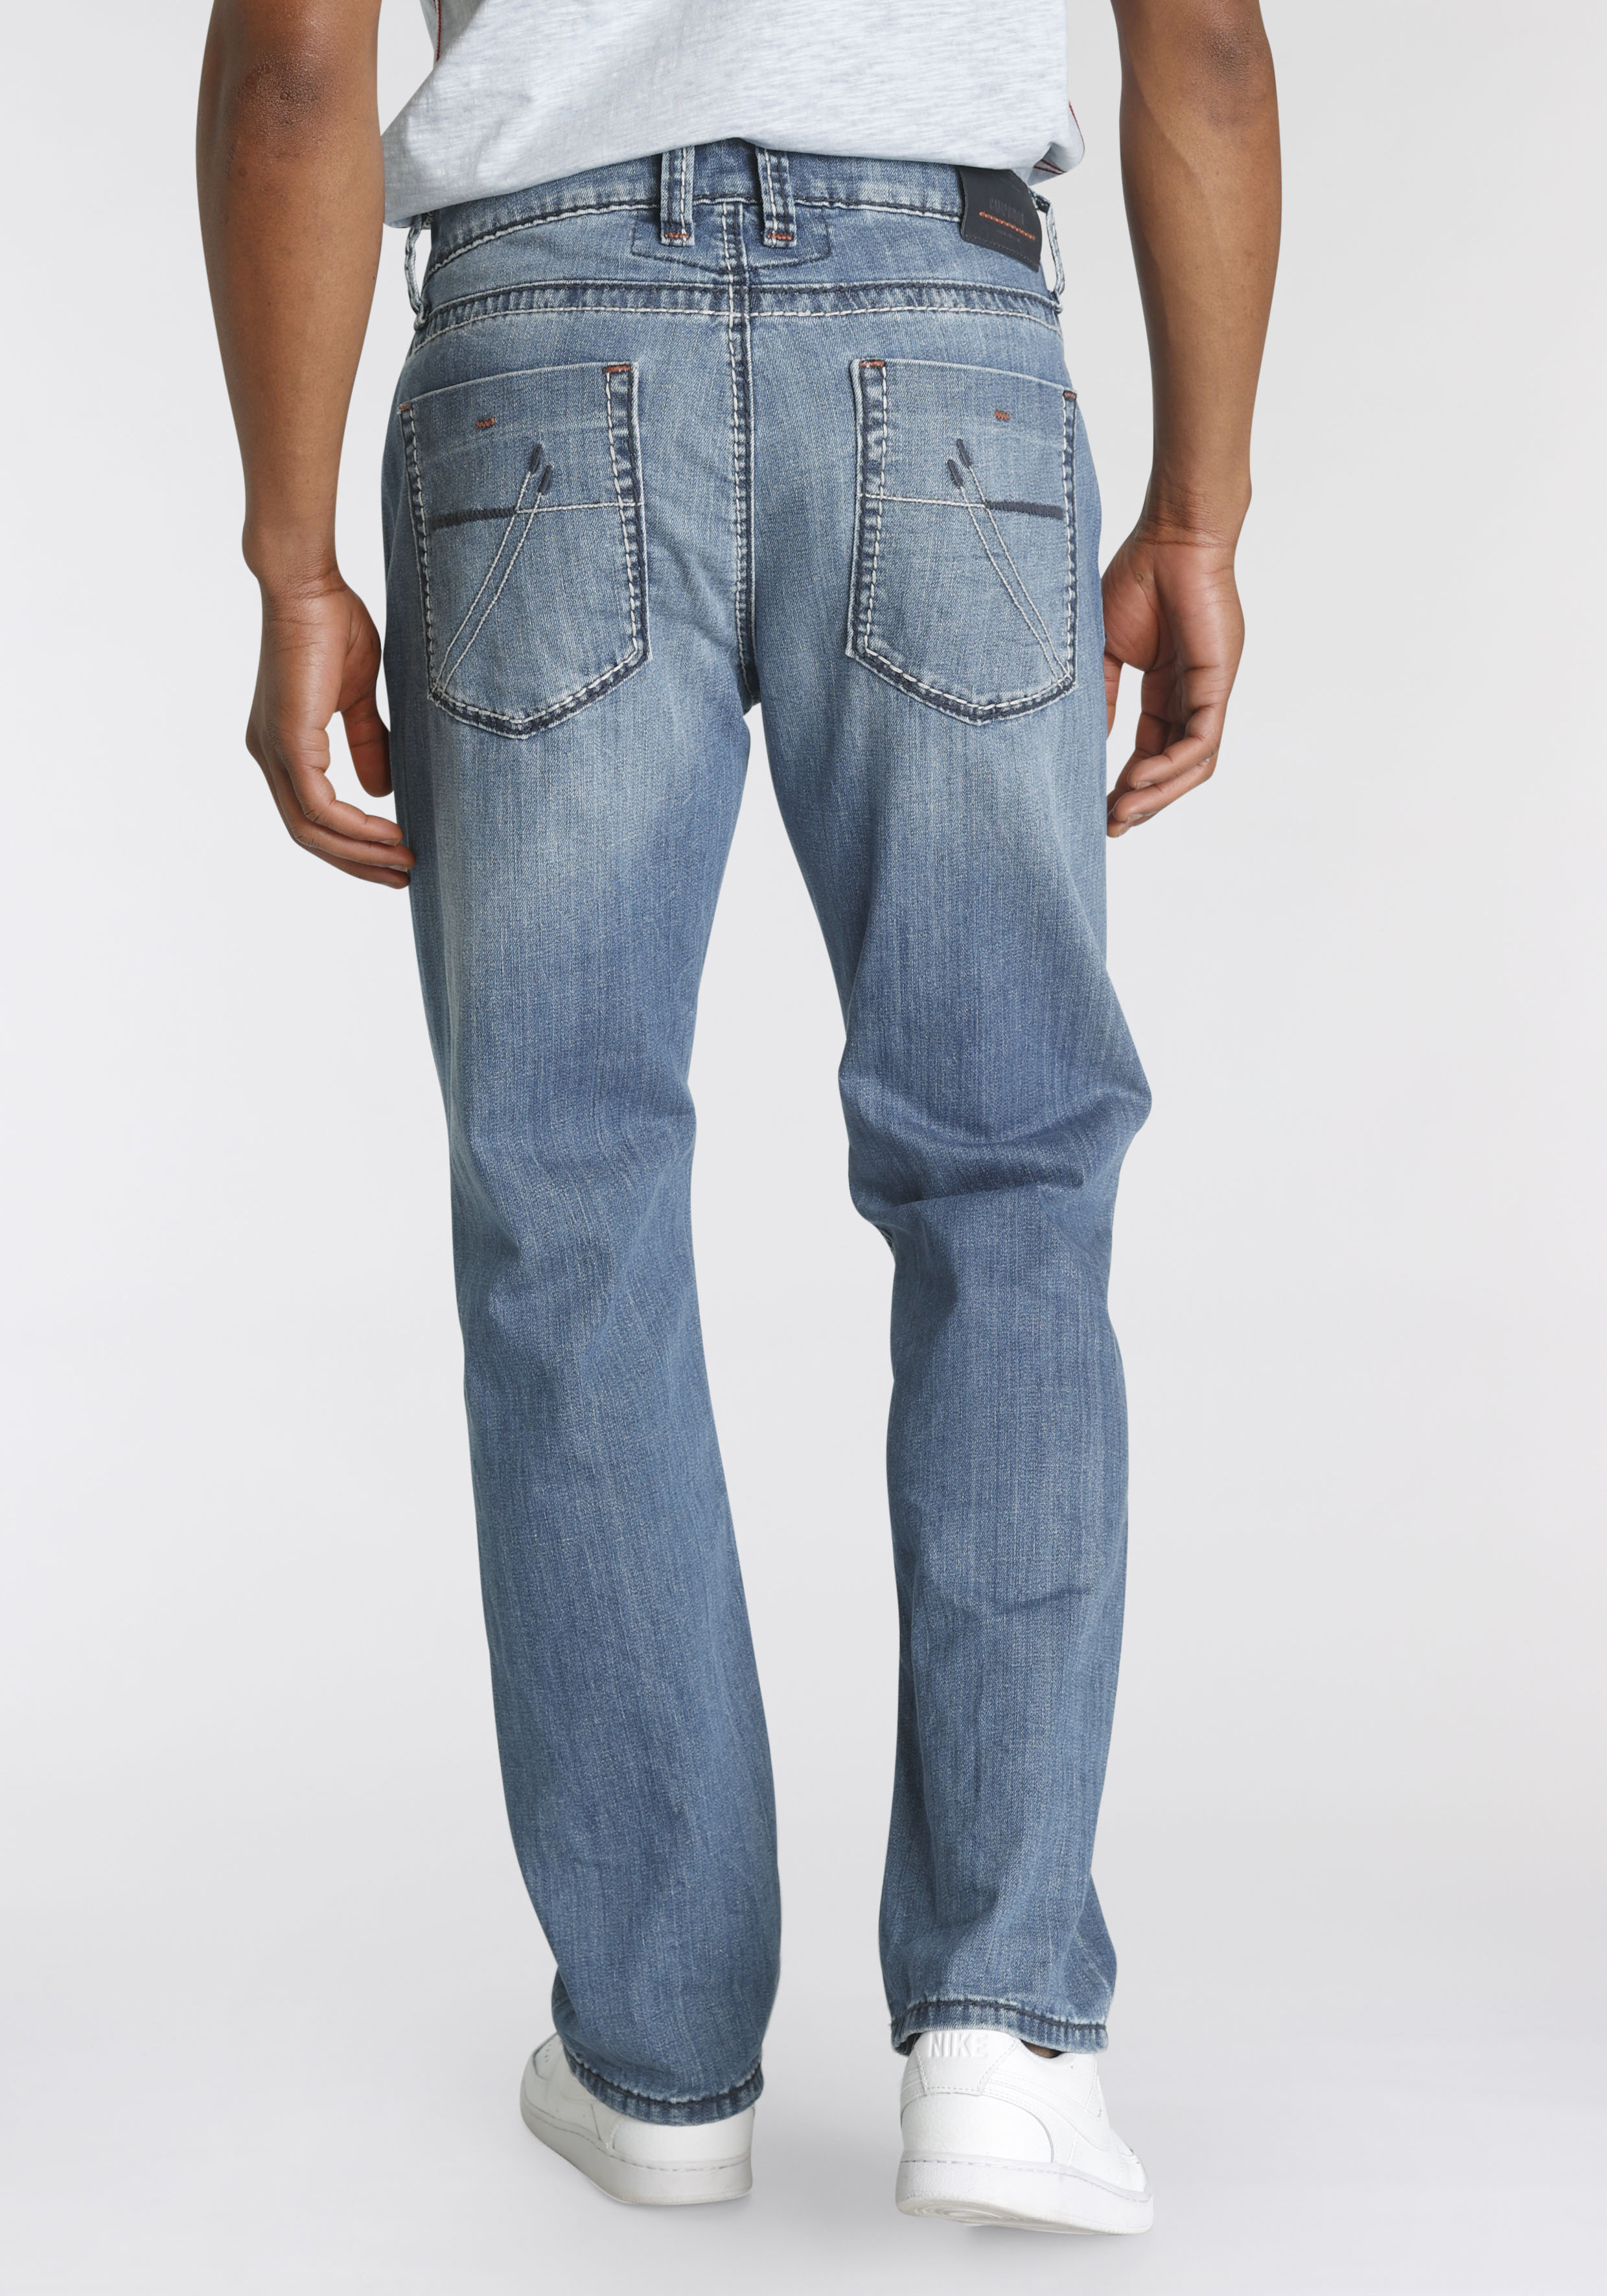 CAMP DAVID Regular-fit-Jeans NI:CO:R611 mit Abriebeffekten günstig online kaufen